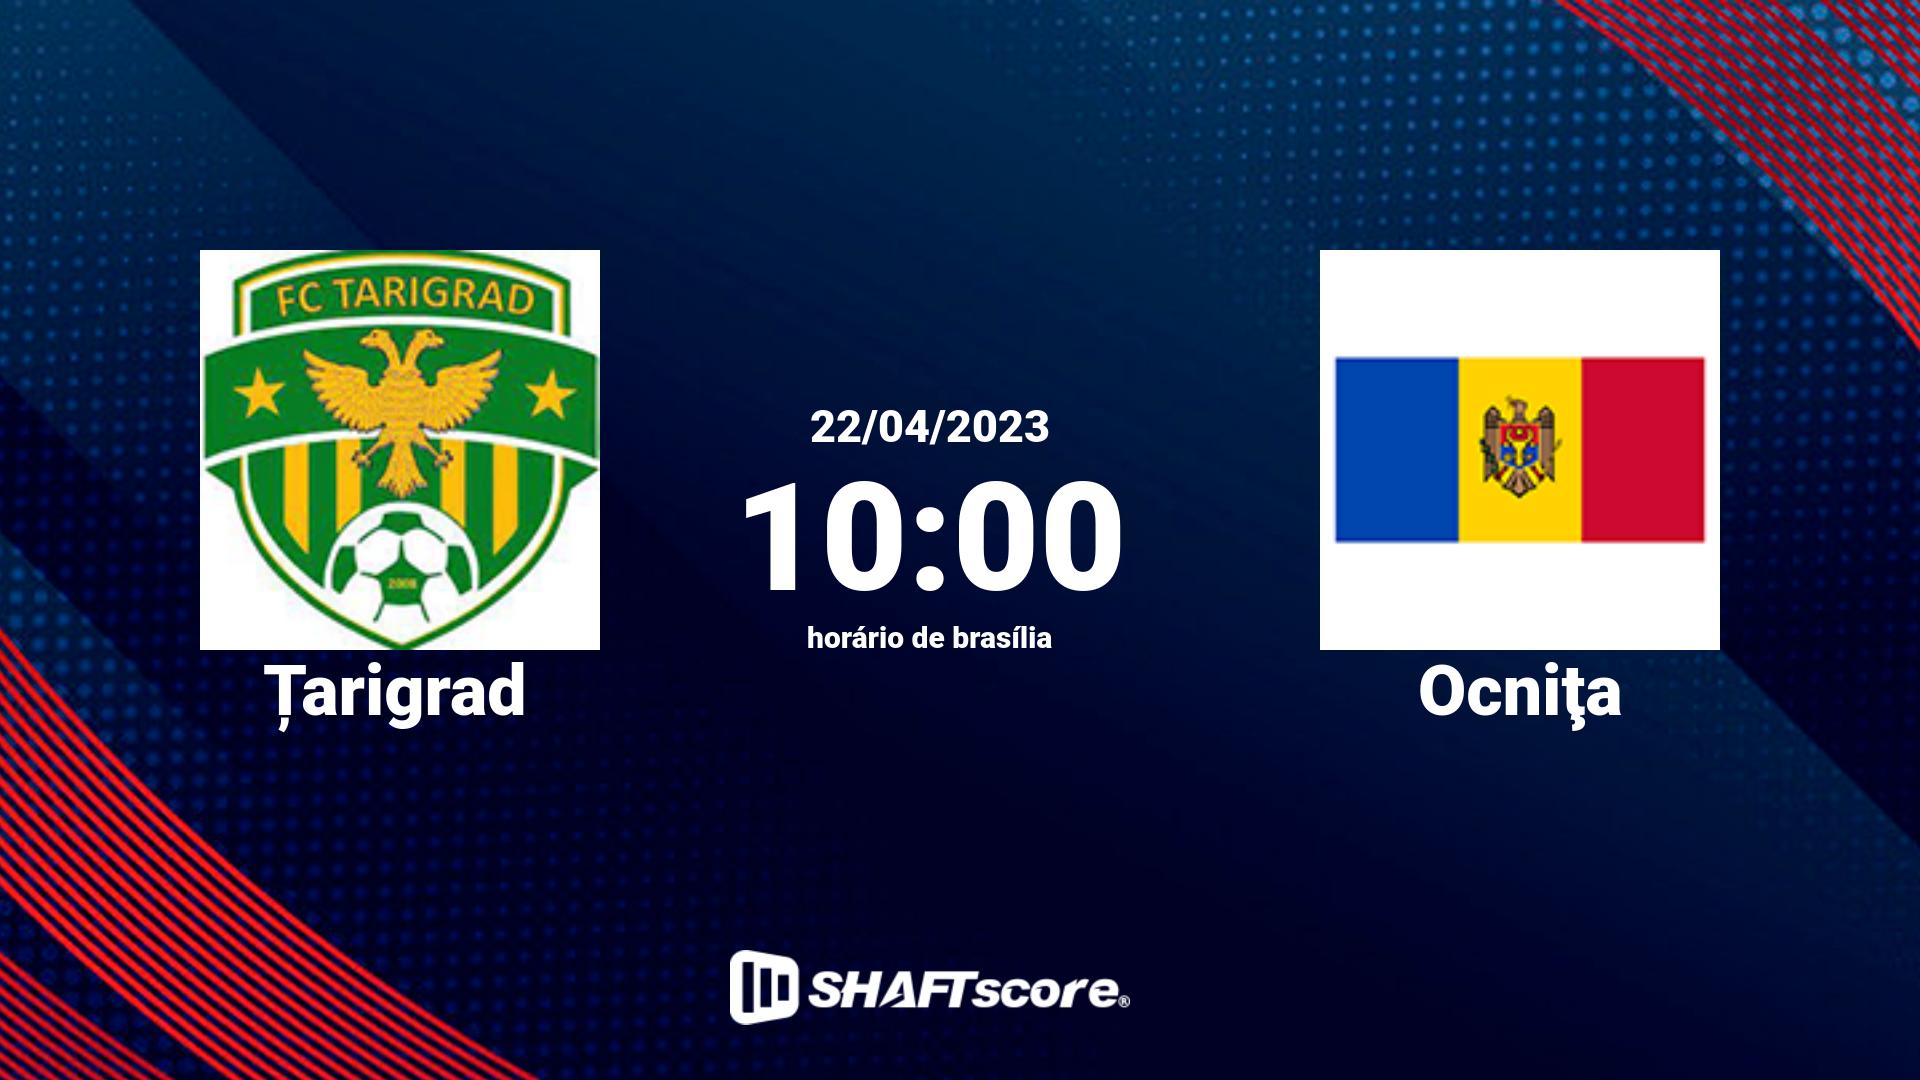 Estatísticas do jogo Țarigrad vs Ocniţa 22.04 10:00